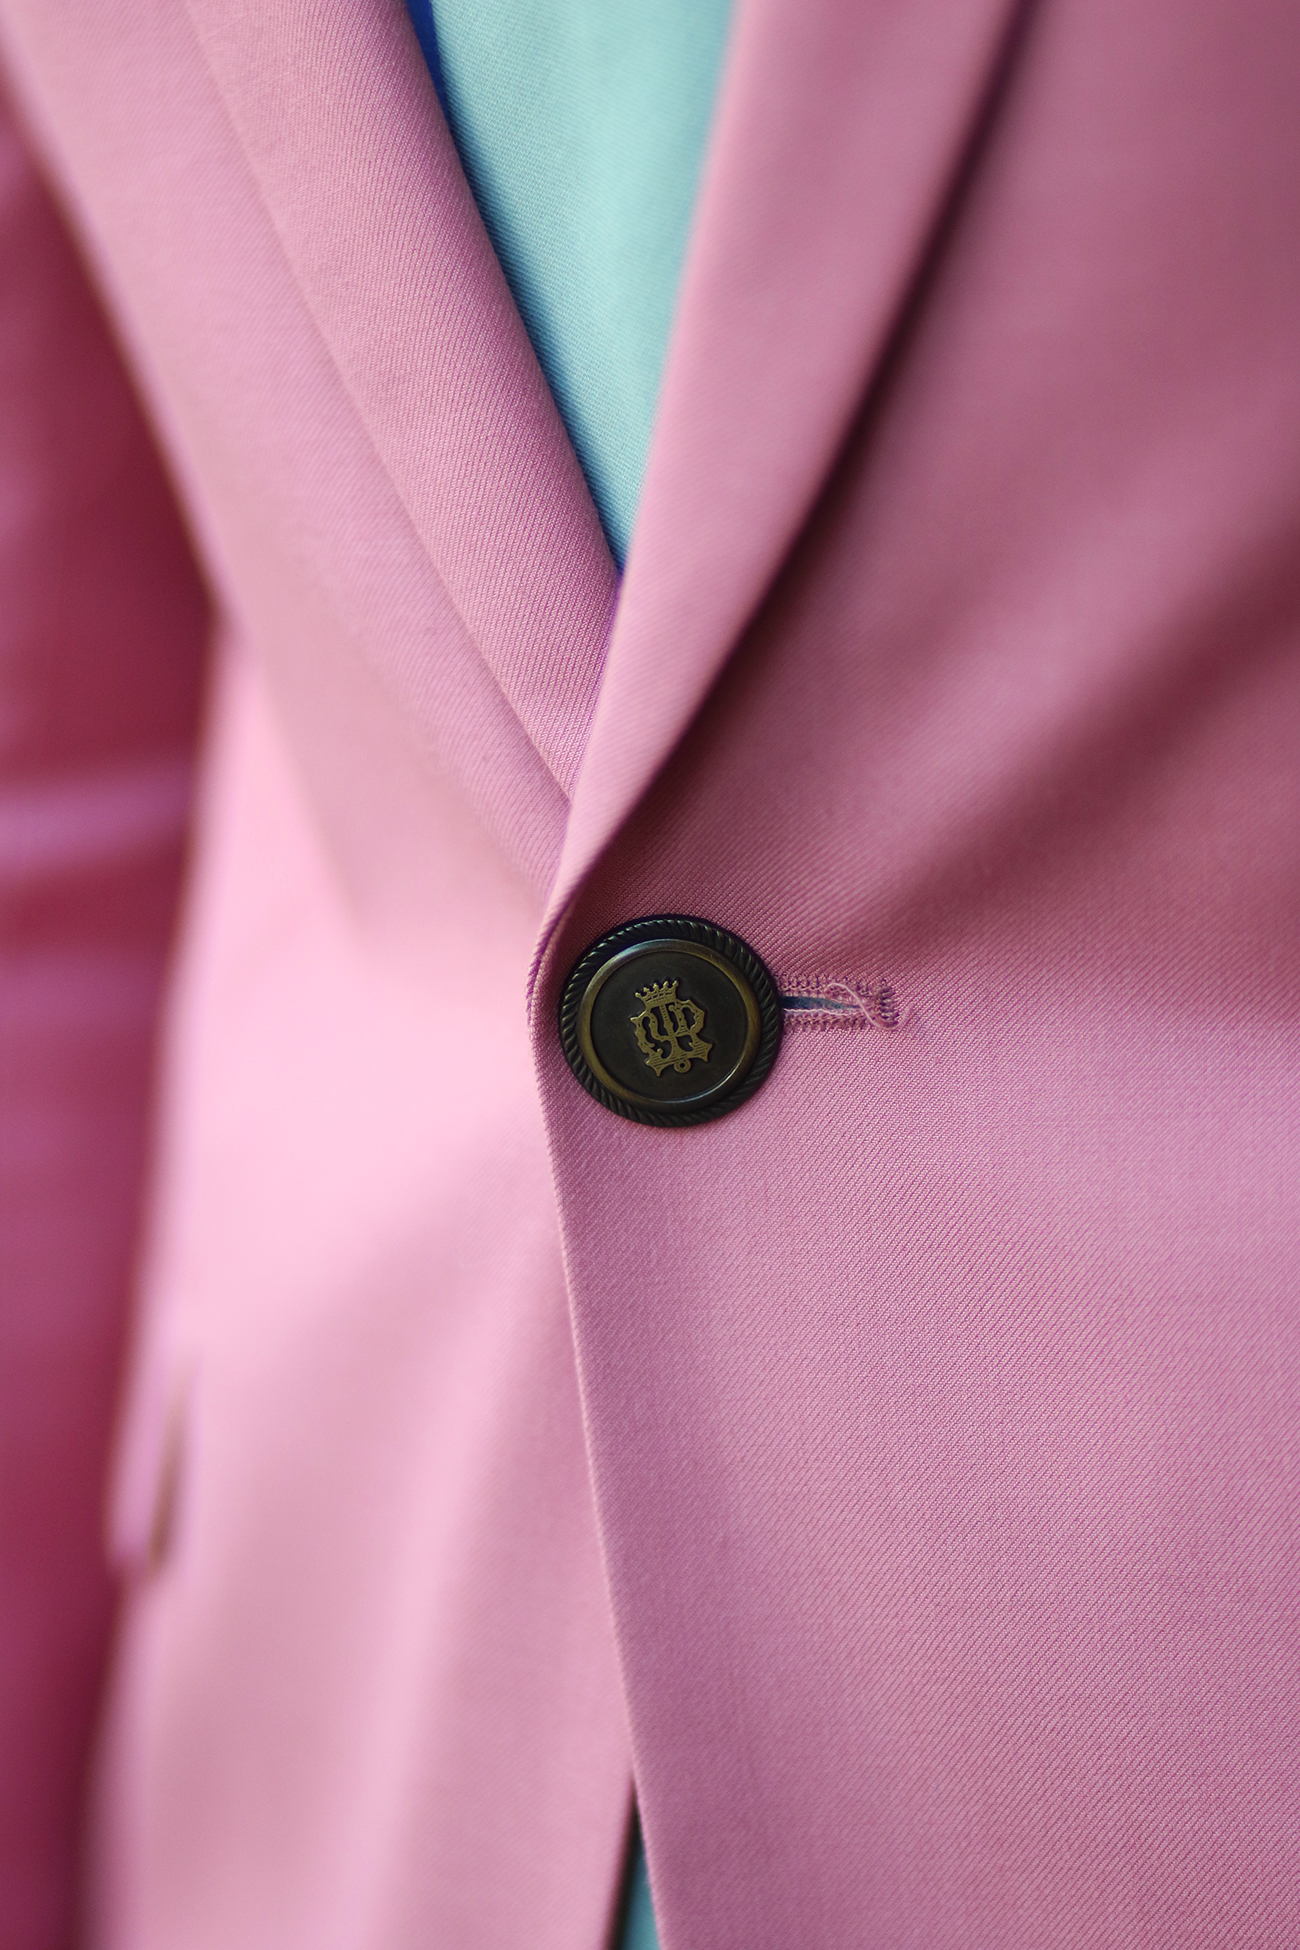 suit-button